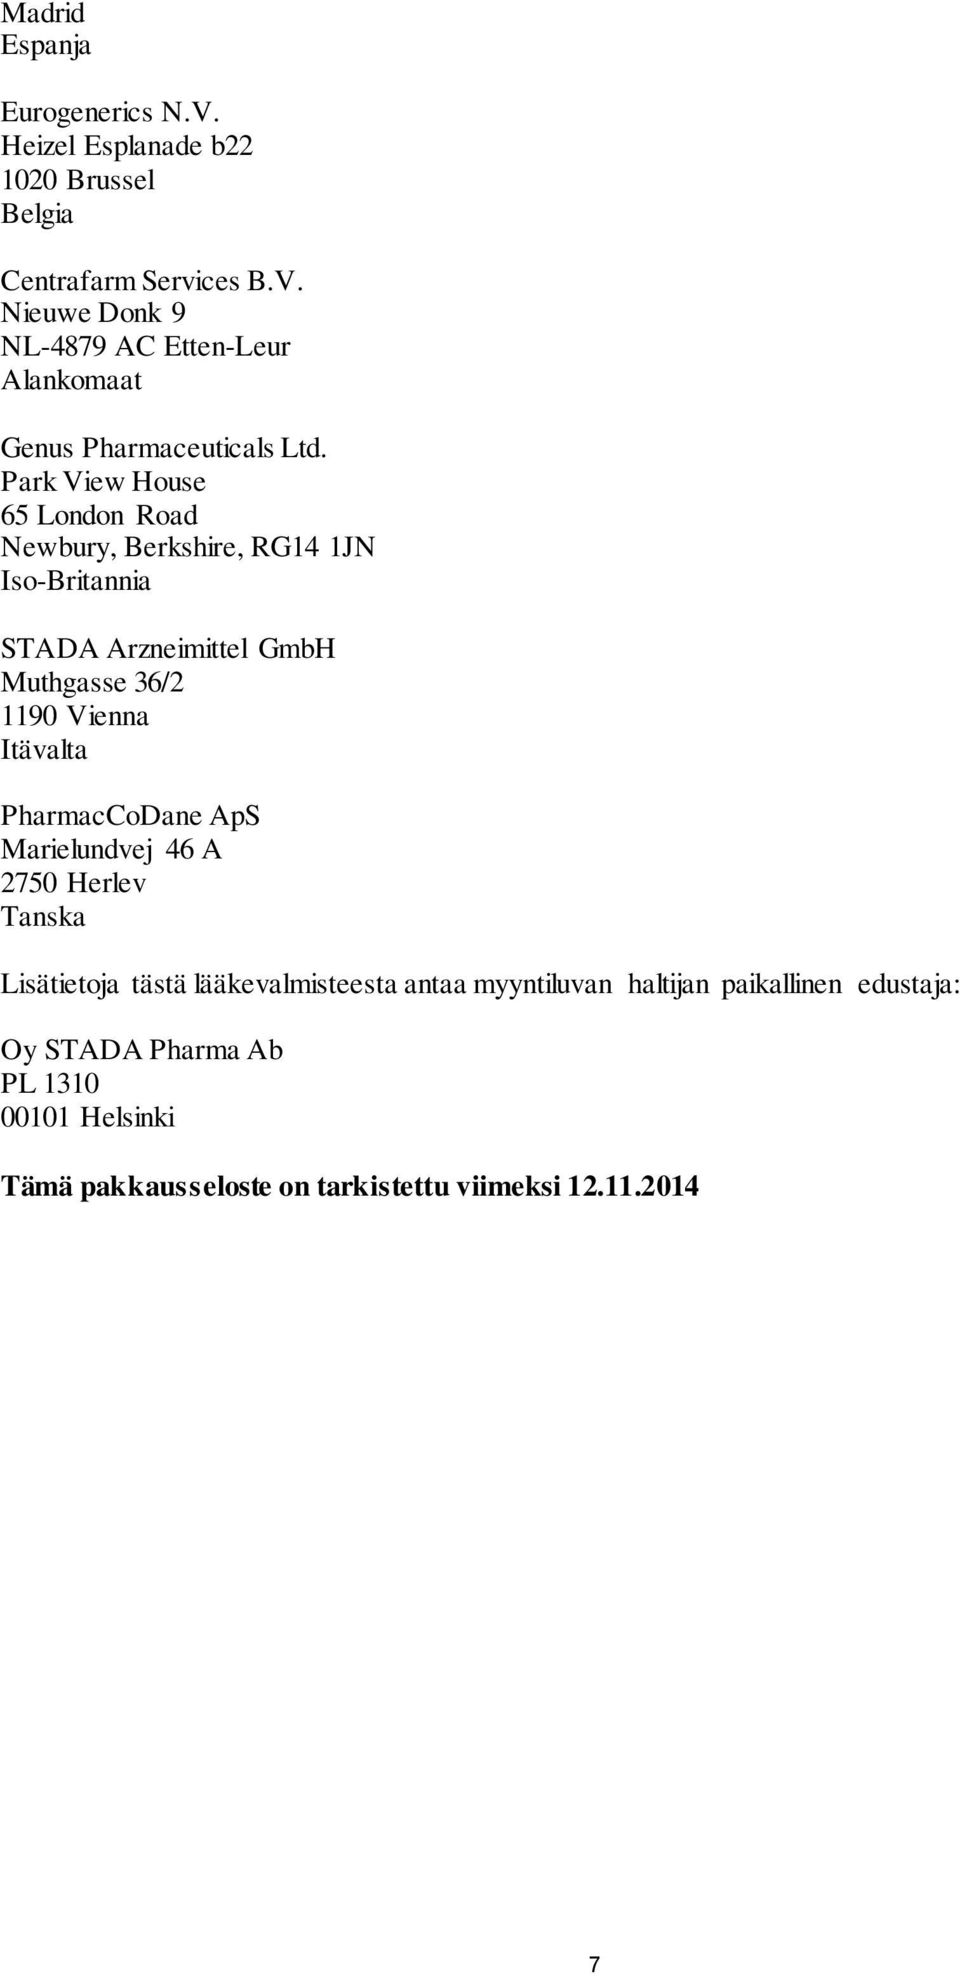 PharmacCoDane ApS Marielundvej 46 A 2750 Herlev Tanska Lisätietoja tästä lääkevalmisteesta antaa myyntiluvan haltijan paikallinen